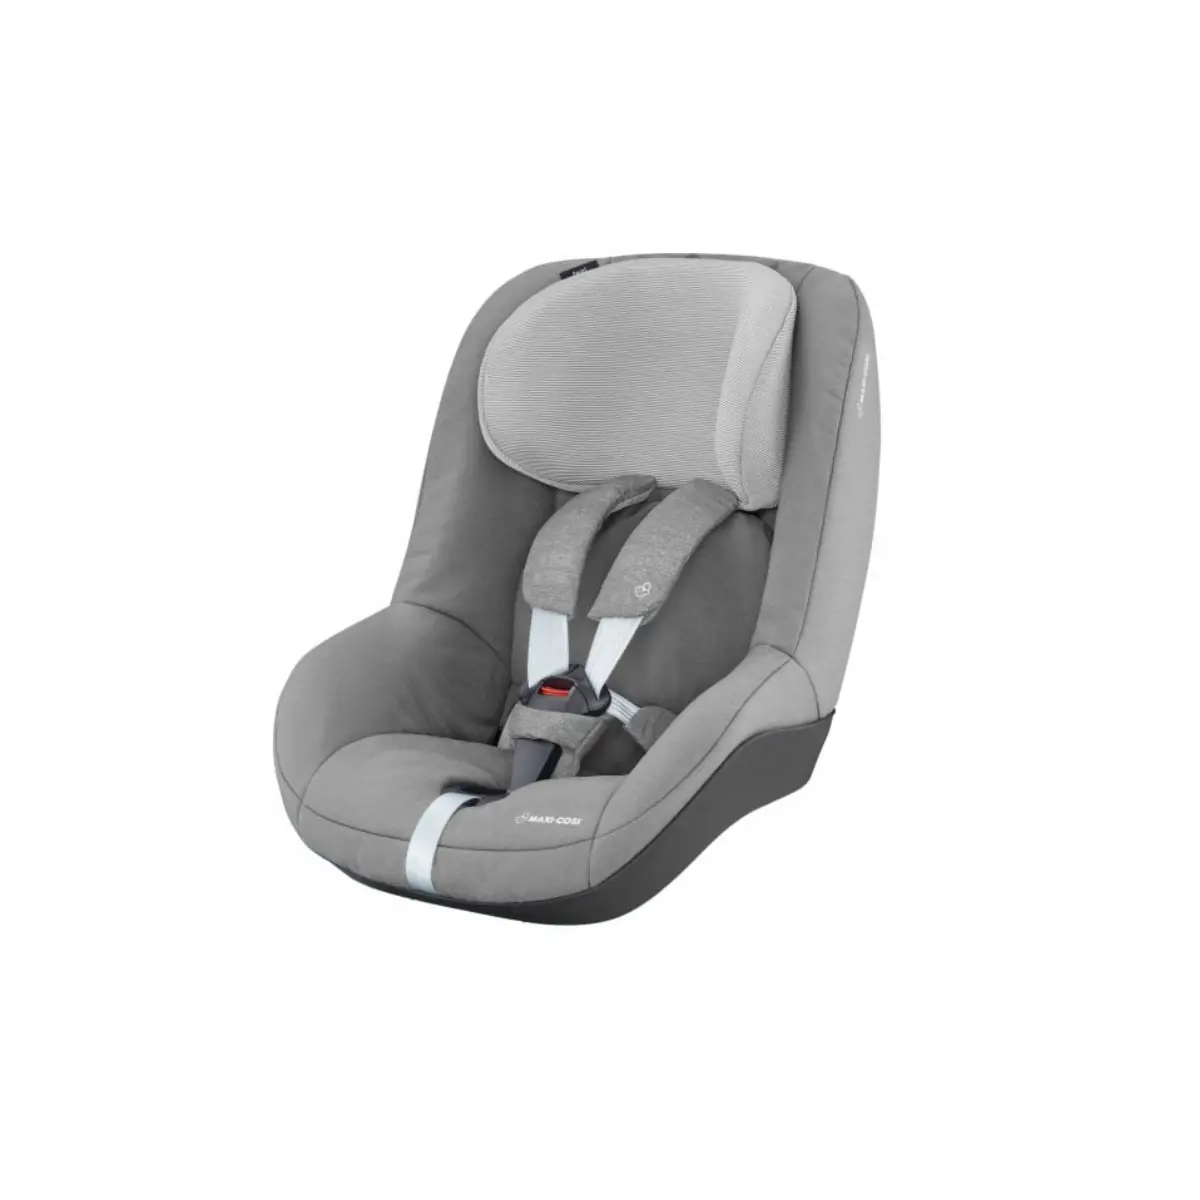 Maxi Cosi Pearl Group 1 Car Seat